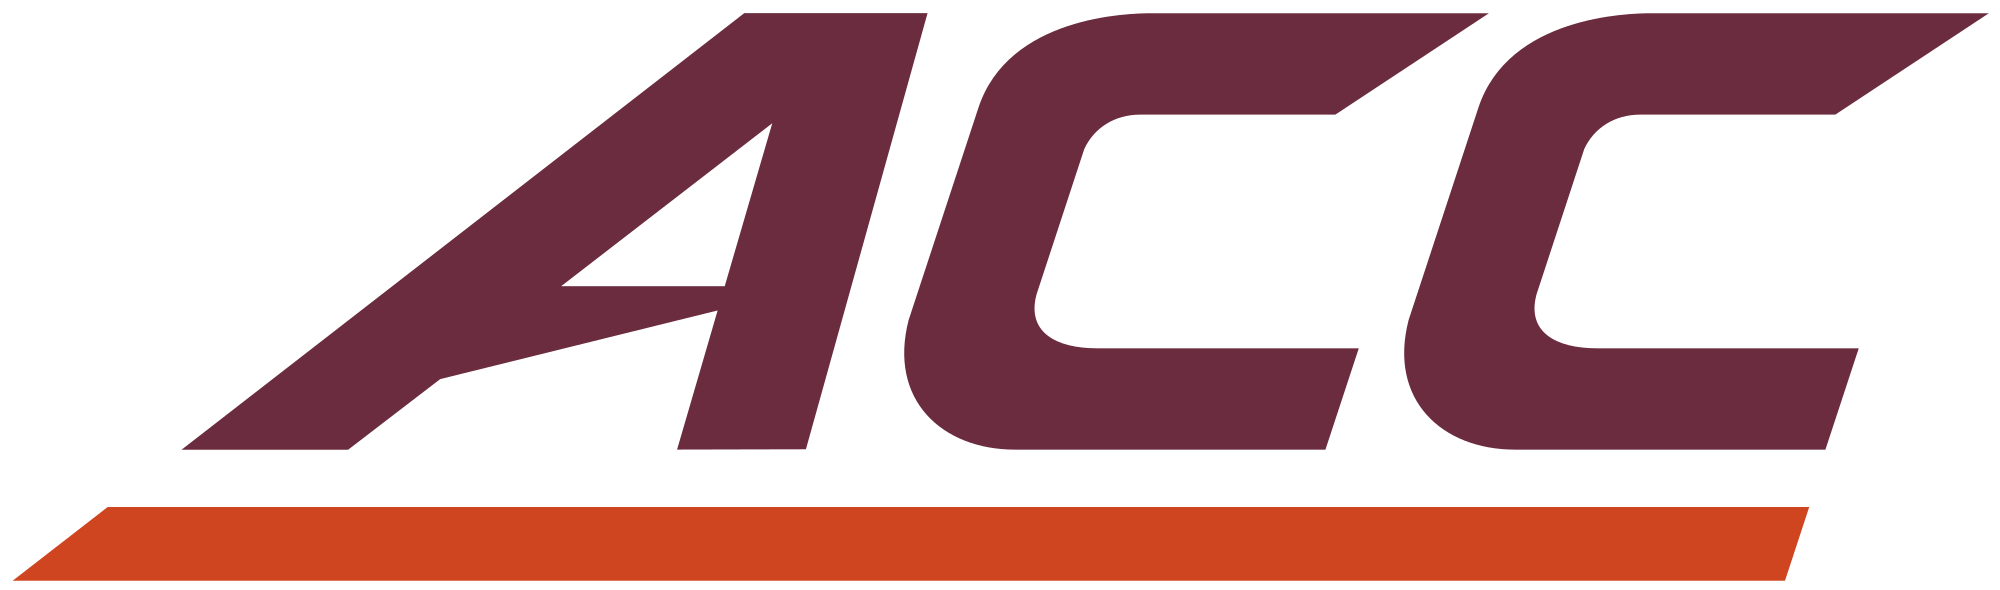 Virginia Tech Logo - ACC logo in Virginia Tech colors.svg